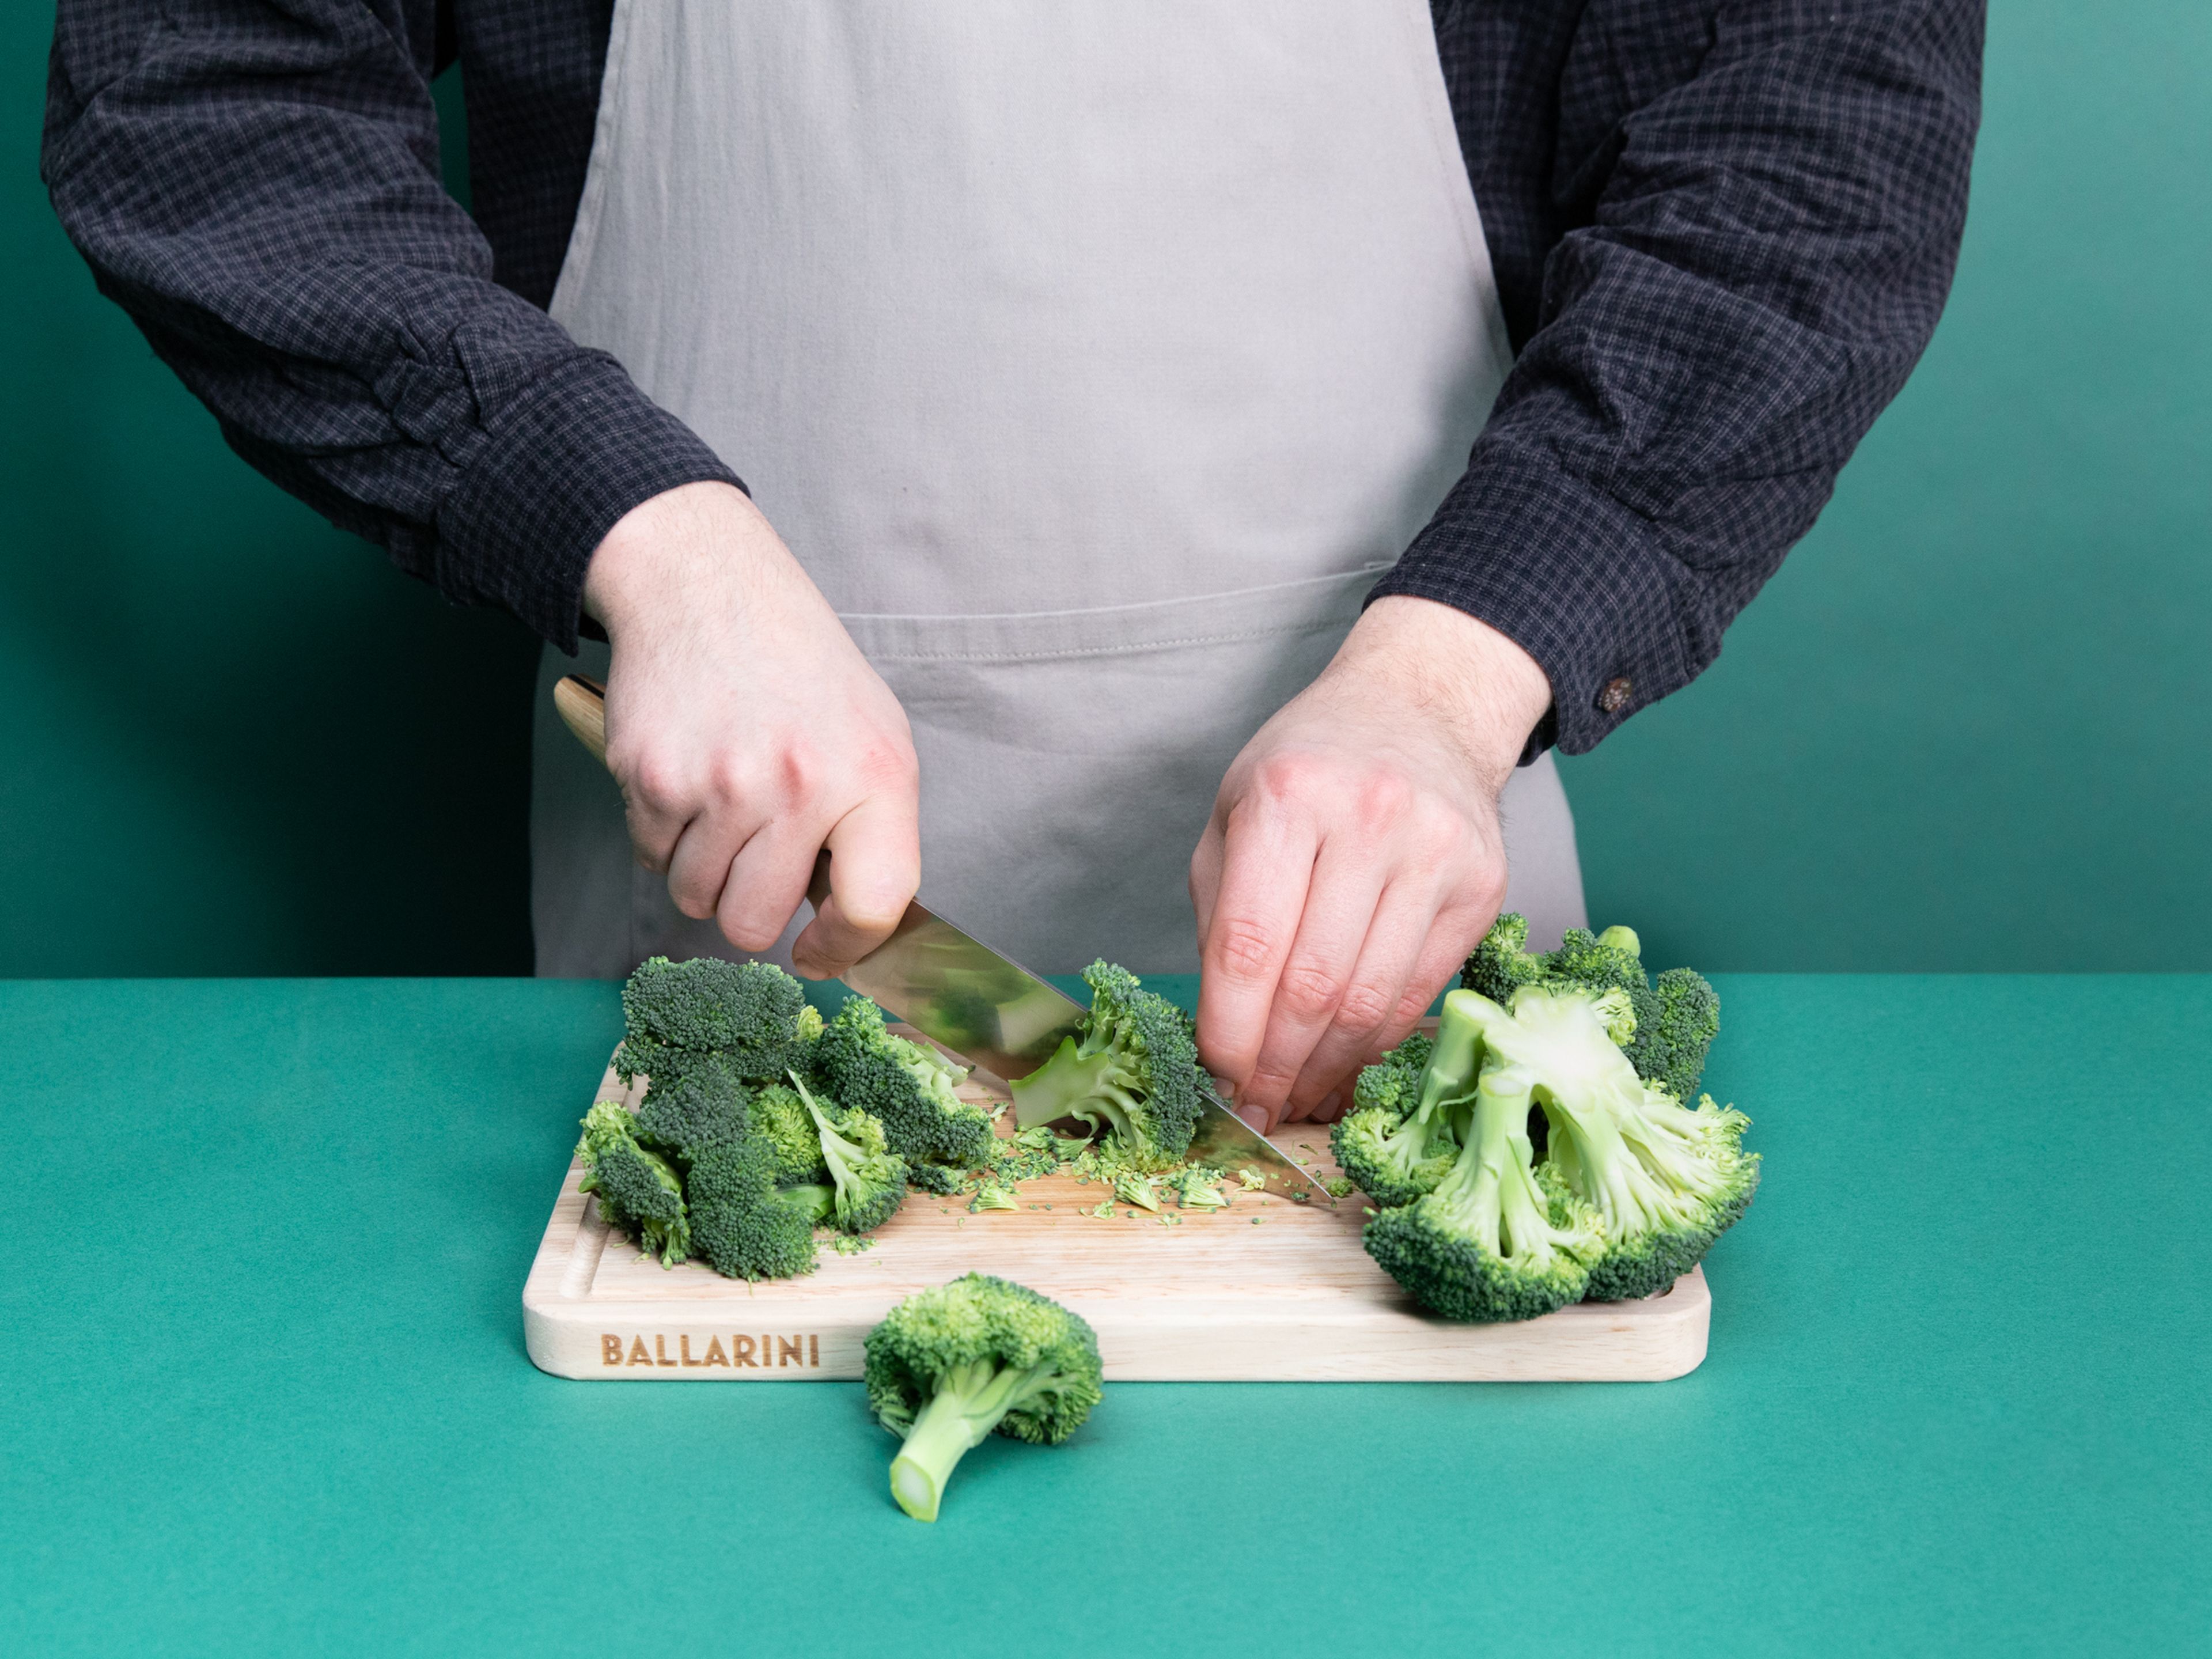 Mortadella würfeln, Brokkoli in kleine Röschen und Knoblauch in dünne Scheiben schneiden.